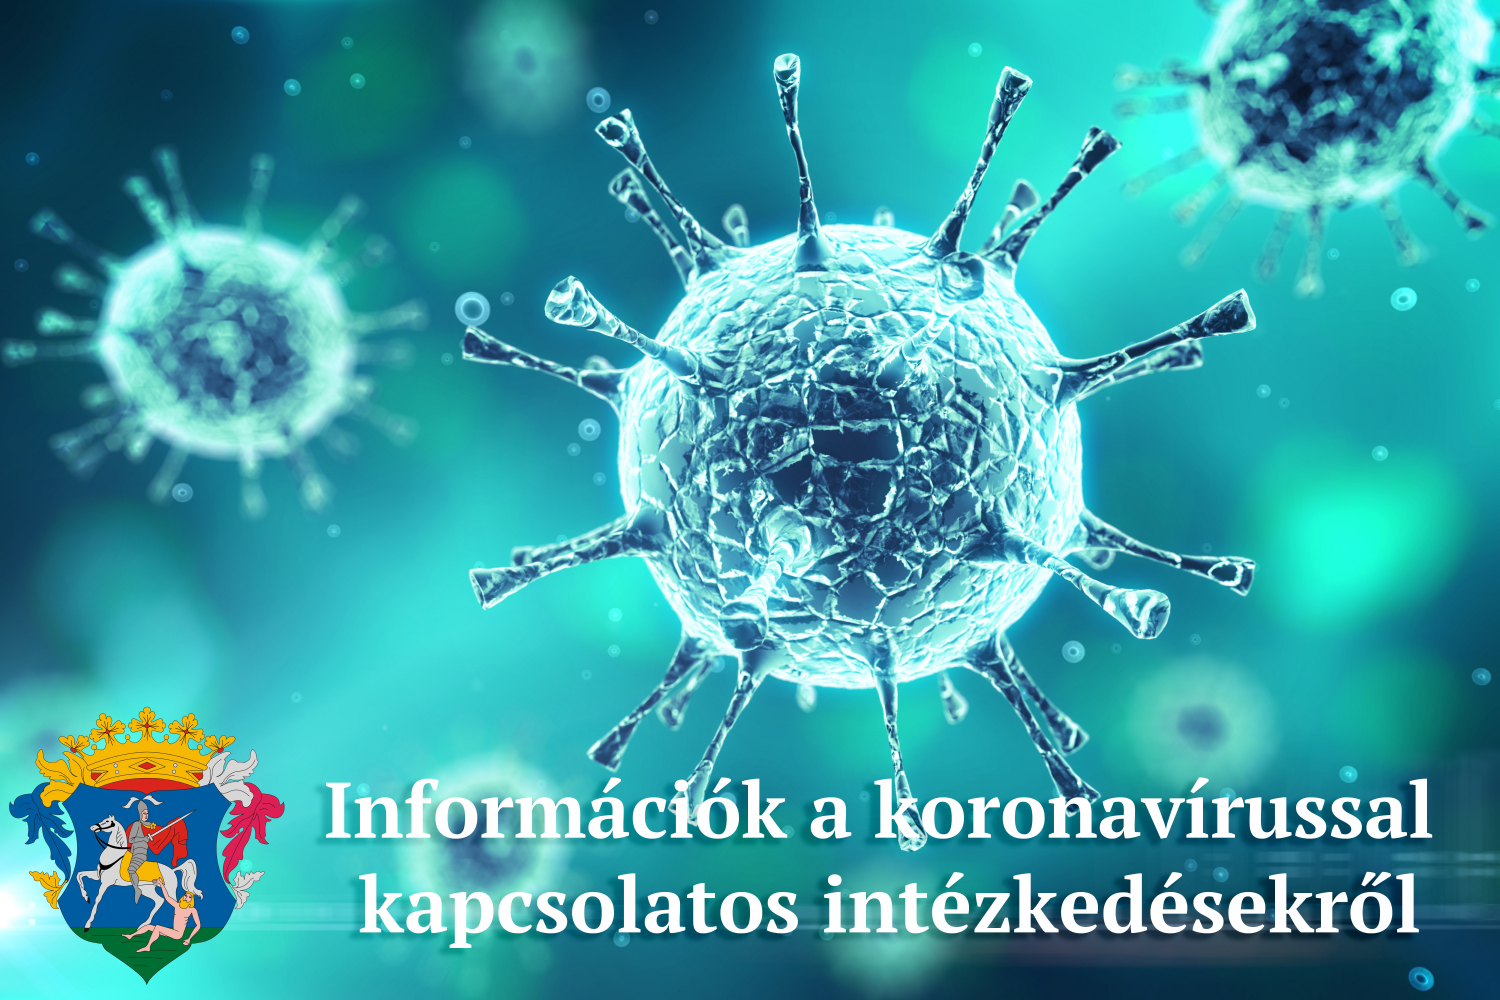 információk a koronavírussal kapcsolatos intézkedésekről, döntésekről 2020. június 16-17